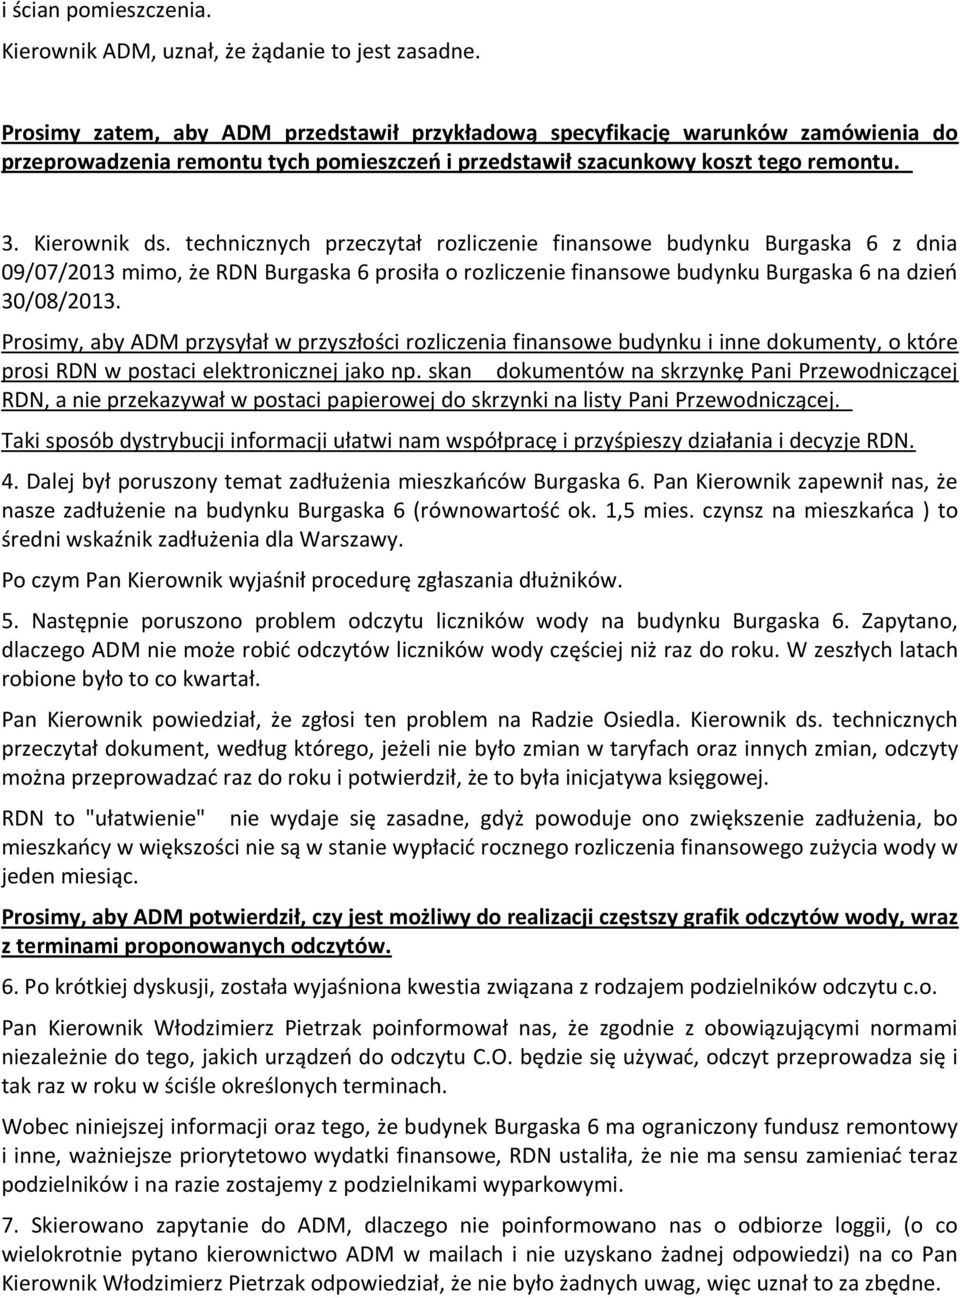 technicznych przeczytał rozliczenie finansowe budynku Burgaska 6 z dnia 09/07/2013 mimo, że RDN Burgaska 6 prosiła o rozliczenie finansowe budynku Burgaska 6 na dzień 30/08/2013.